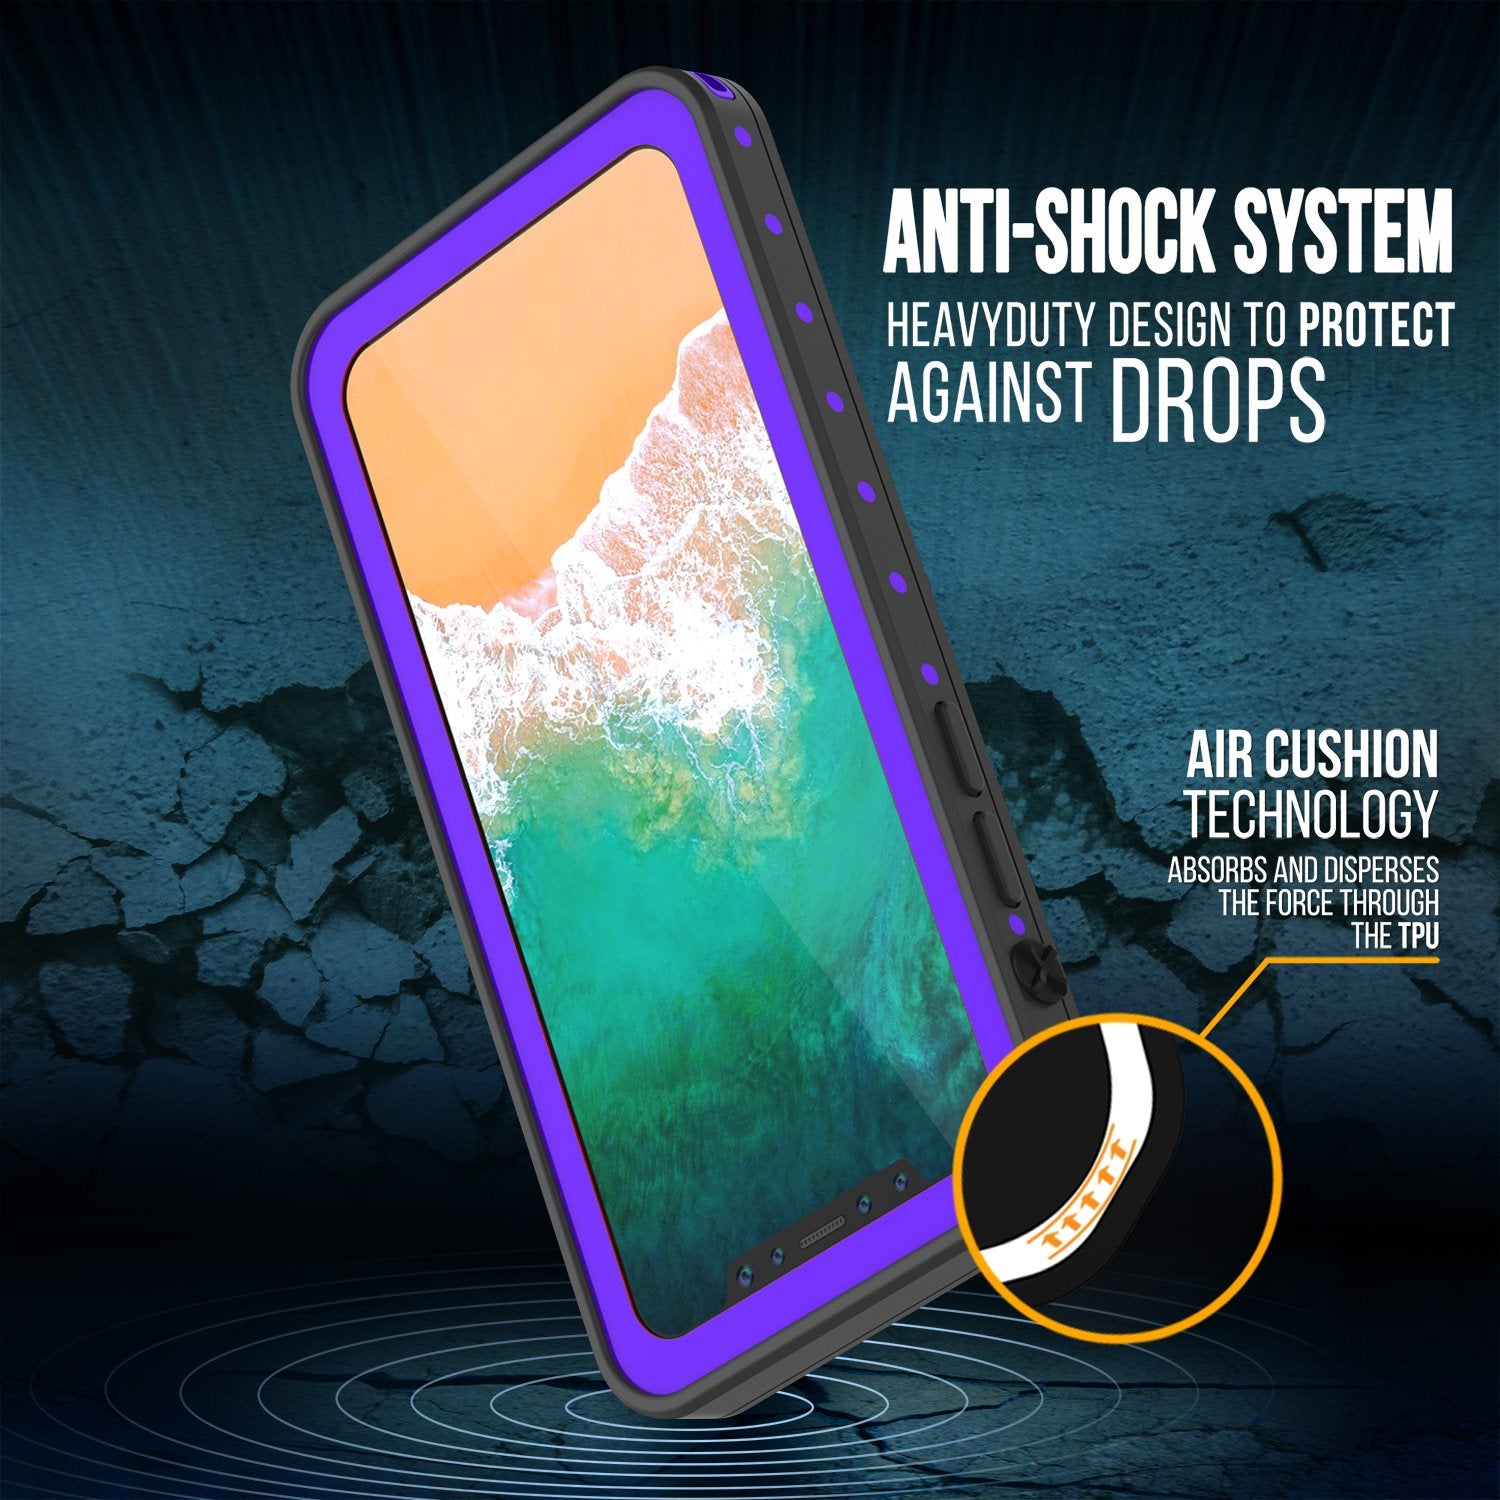 iPhone X Waterproof IP68 Case, Punkcase [Purple] [StudStar Series] [Slim Fit] [Dirtproof]